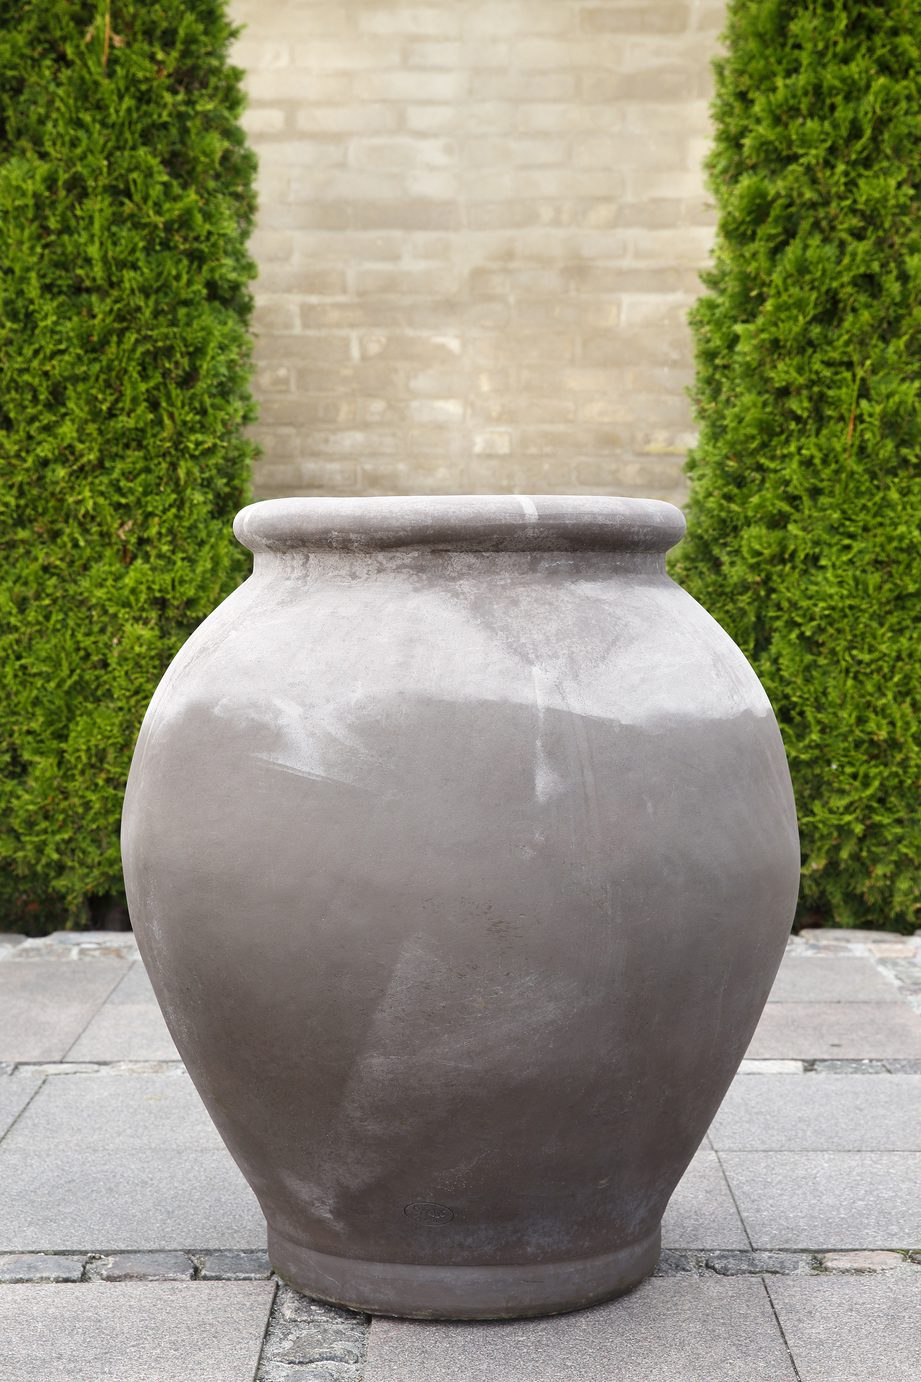 Large grey amphora-shaped outdoor pot.